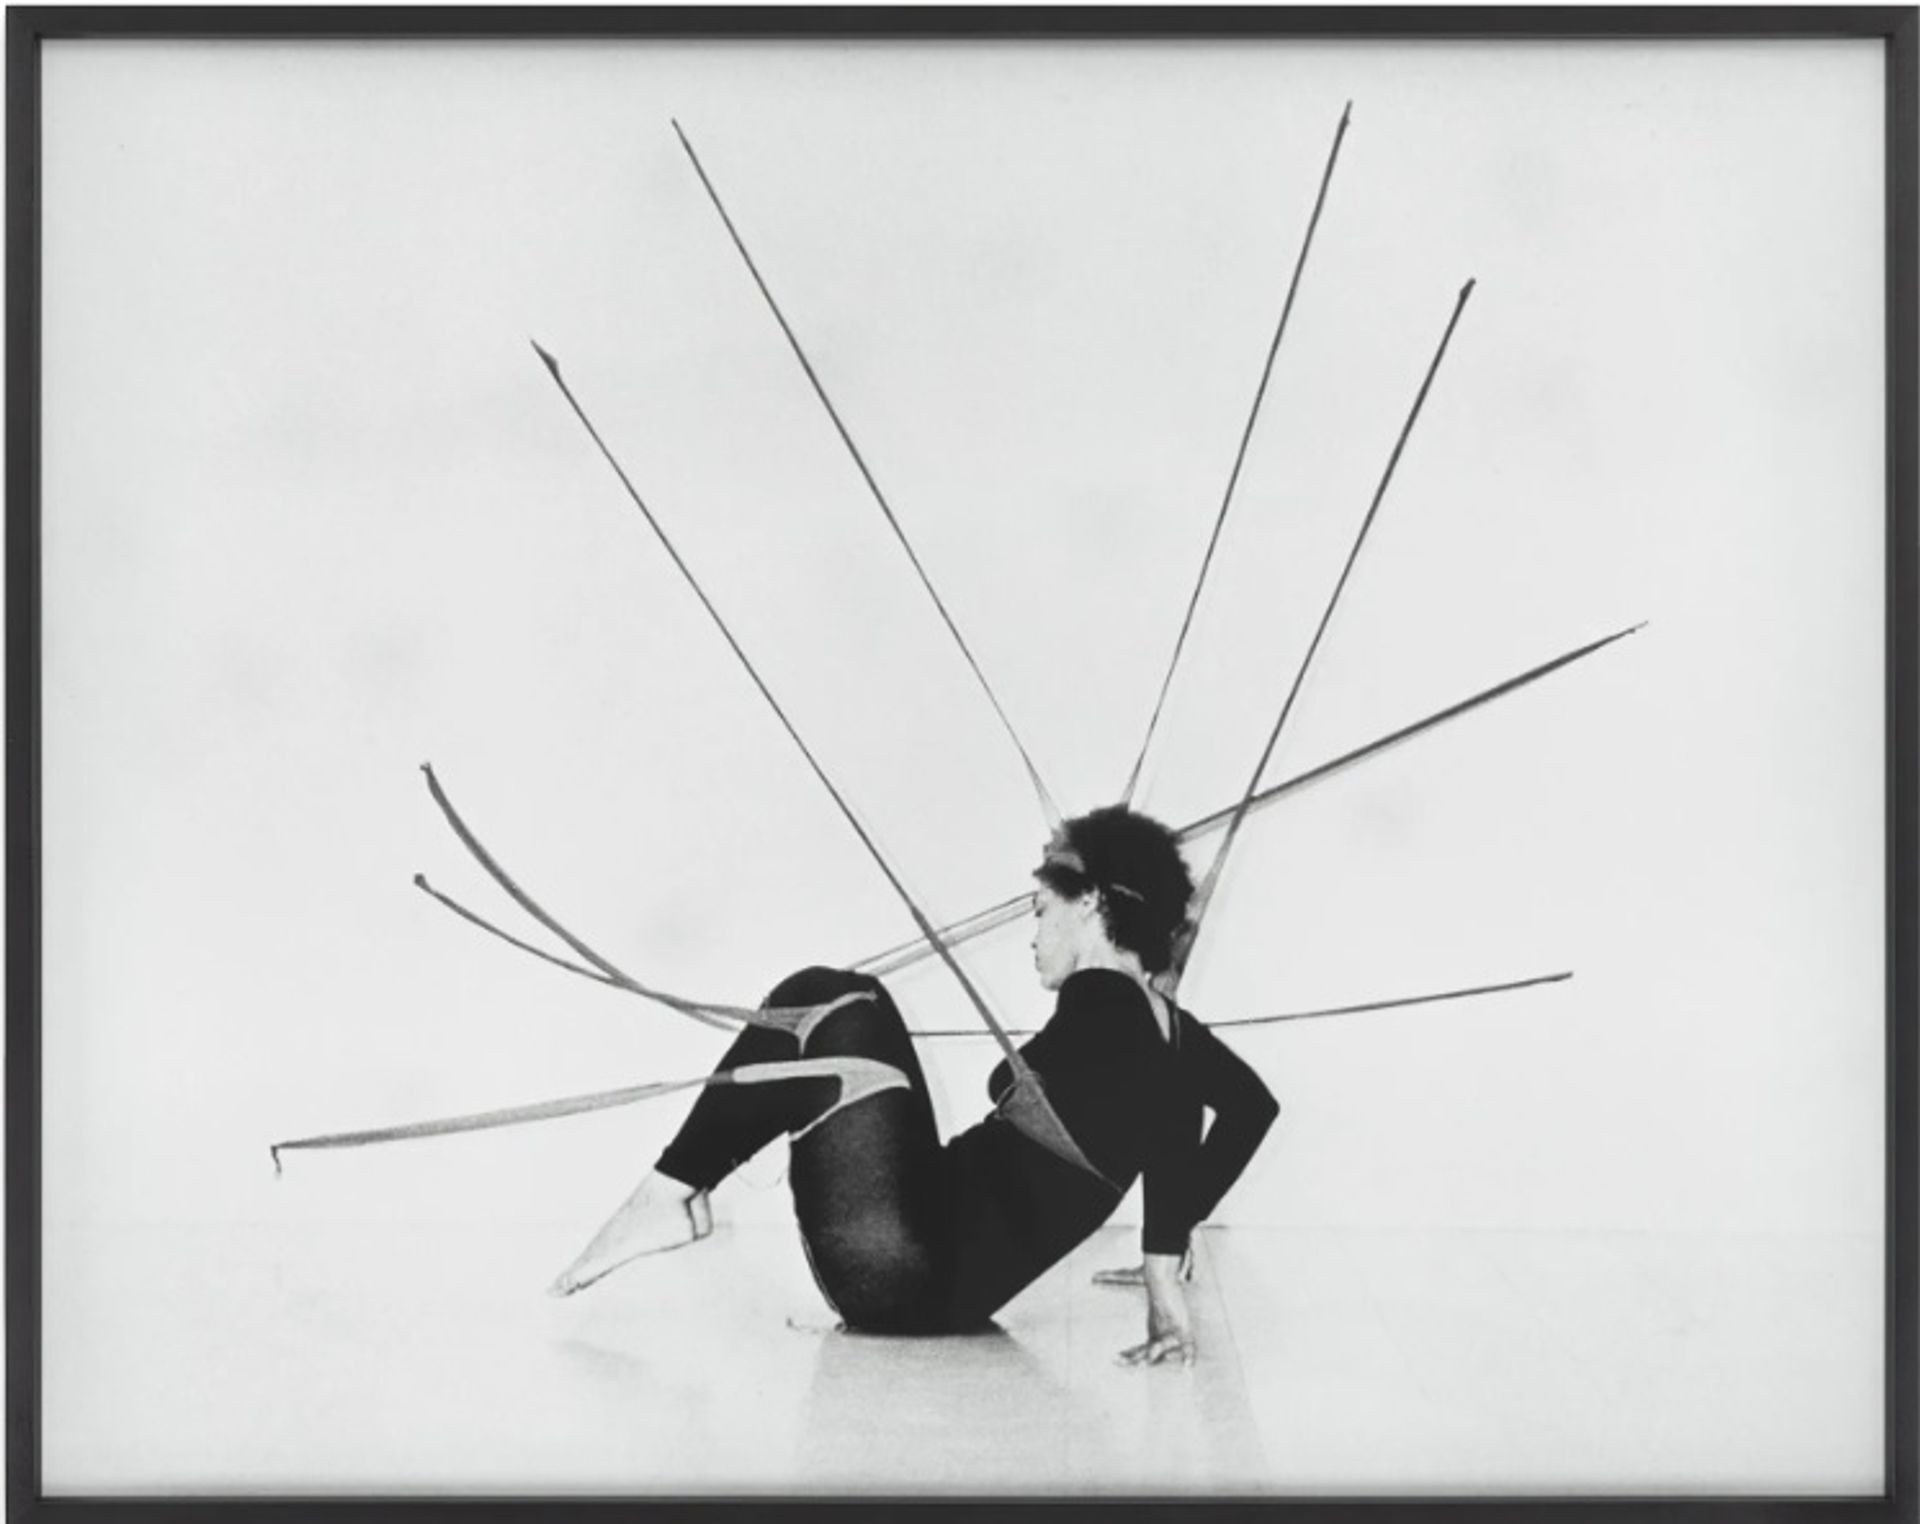 סנגה ננגודי, קטע פרפורמנס

צילום: הרמון מחוץ לחוק. © Senga Nengudi, 2022. באדיבות Sprüth Magers ו-Thomas Erben Gallery, ניו יורק